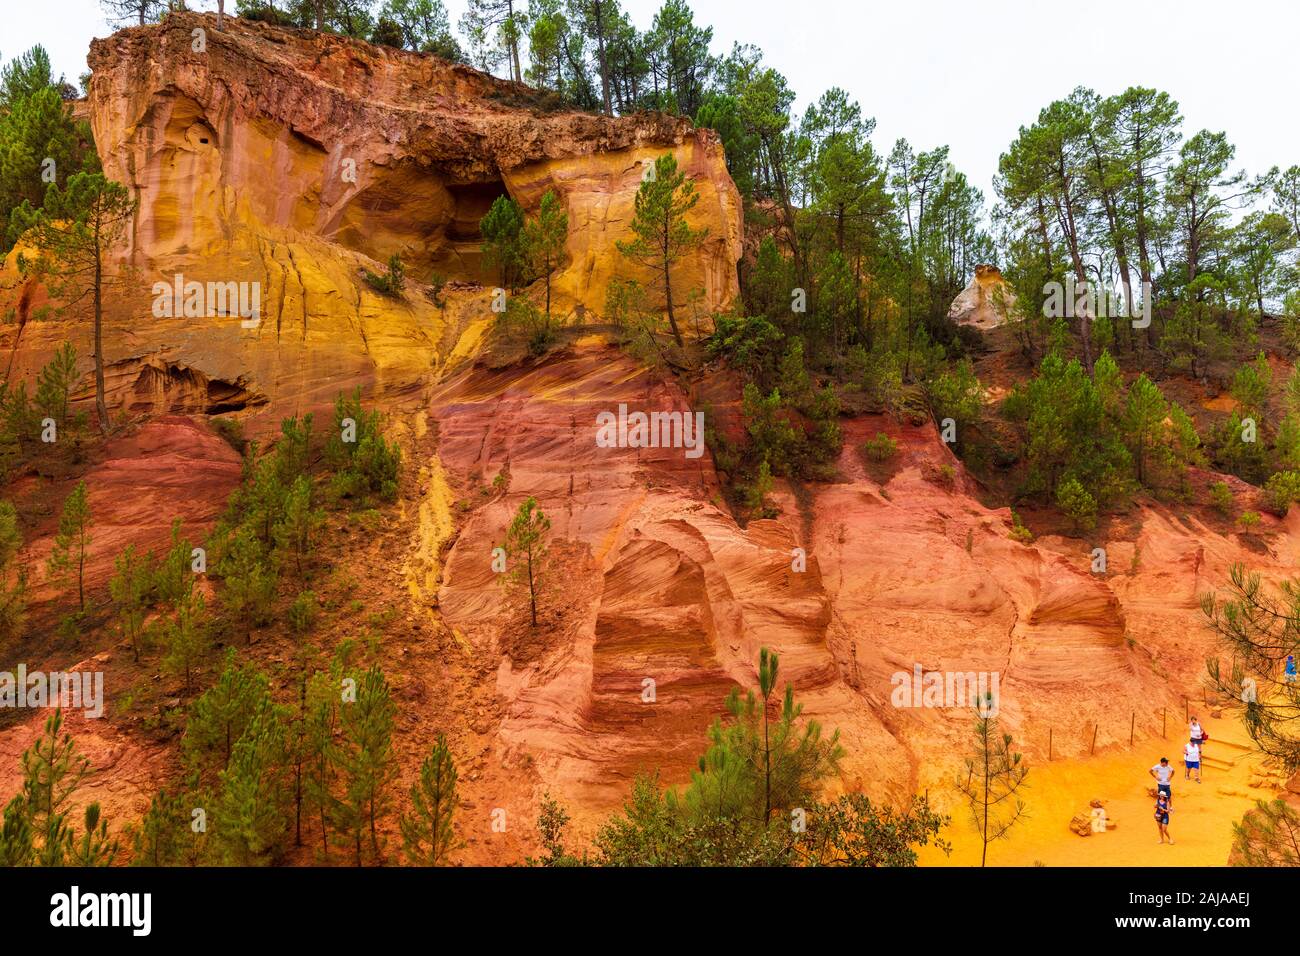 Sentier des ocres à Roussillon, Sentier des Ocres, un chemin de randonnée dans un parc naturel de la zone colorée falaises rouges et jaunes dans une ancienne carrière de pigment ocre surrou Banque D'Images